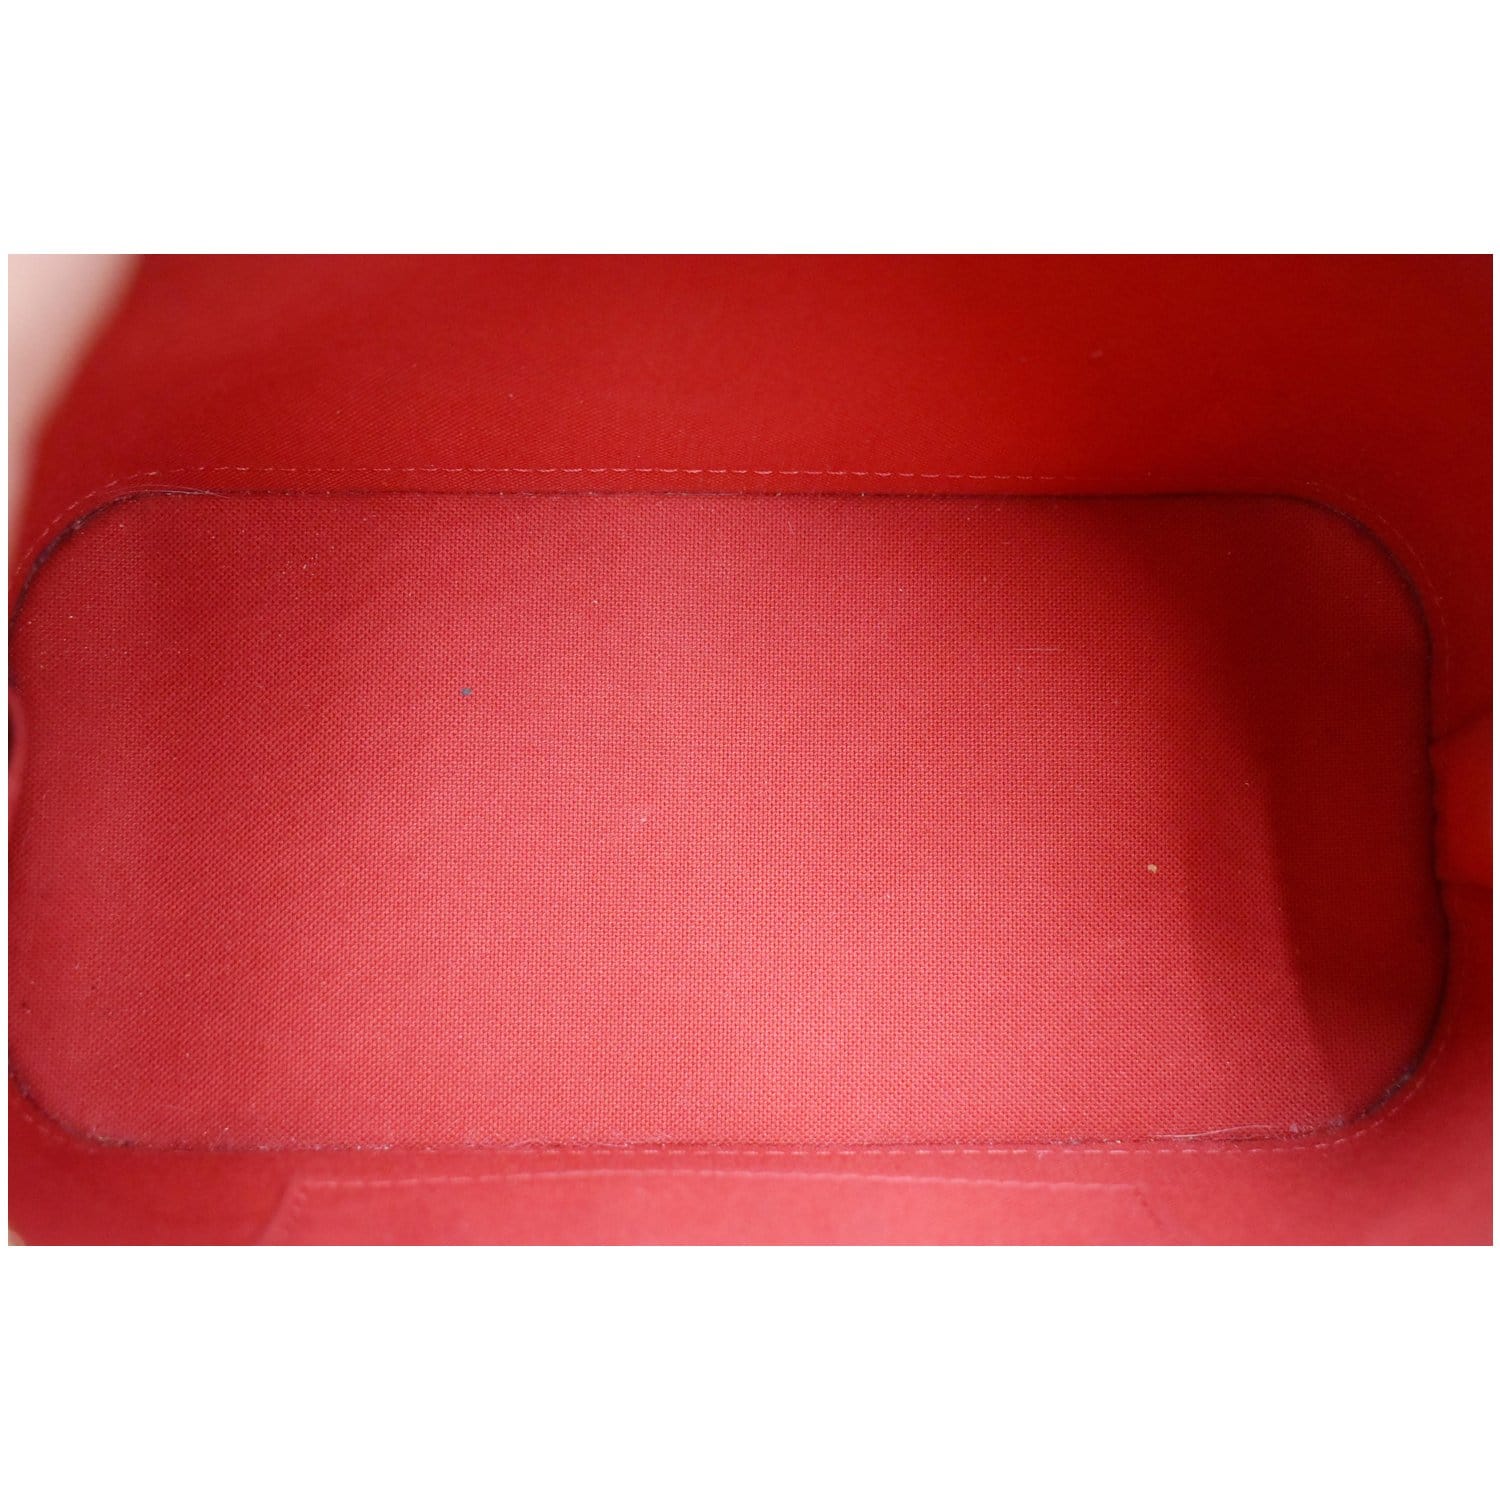 Alma bb cloth handbag Louis Vuitton Brown in Cloth - 35569568